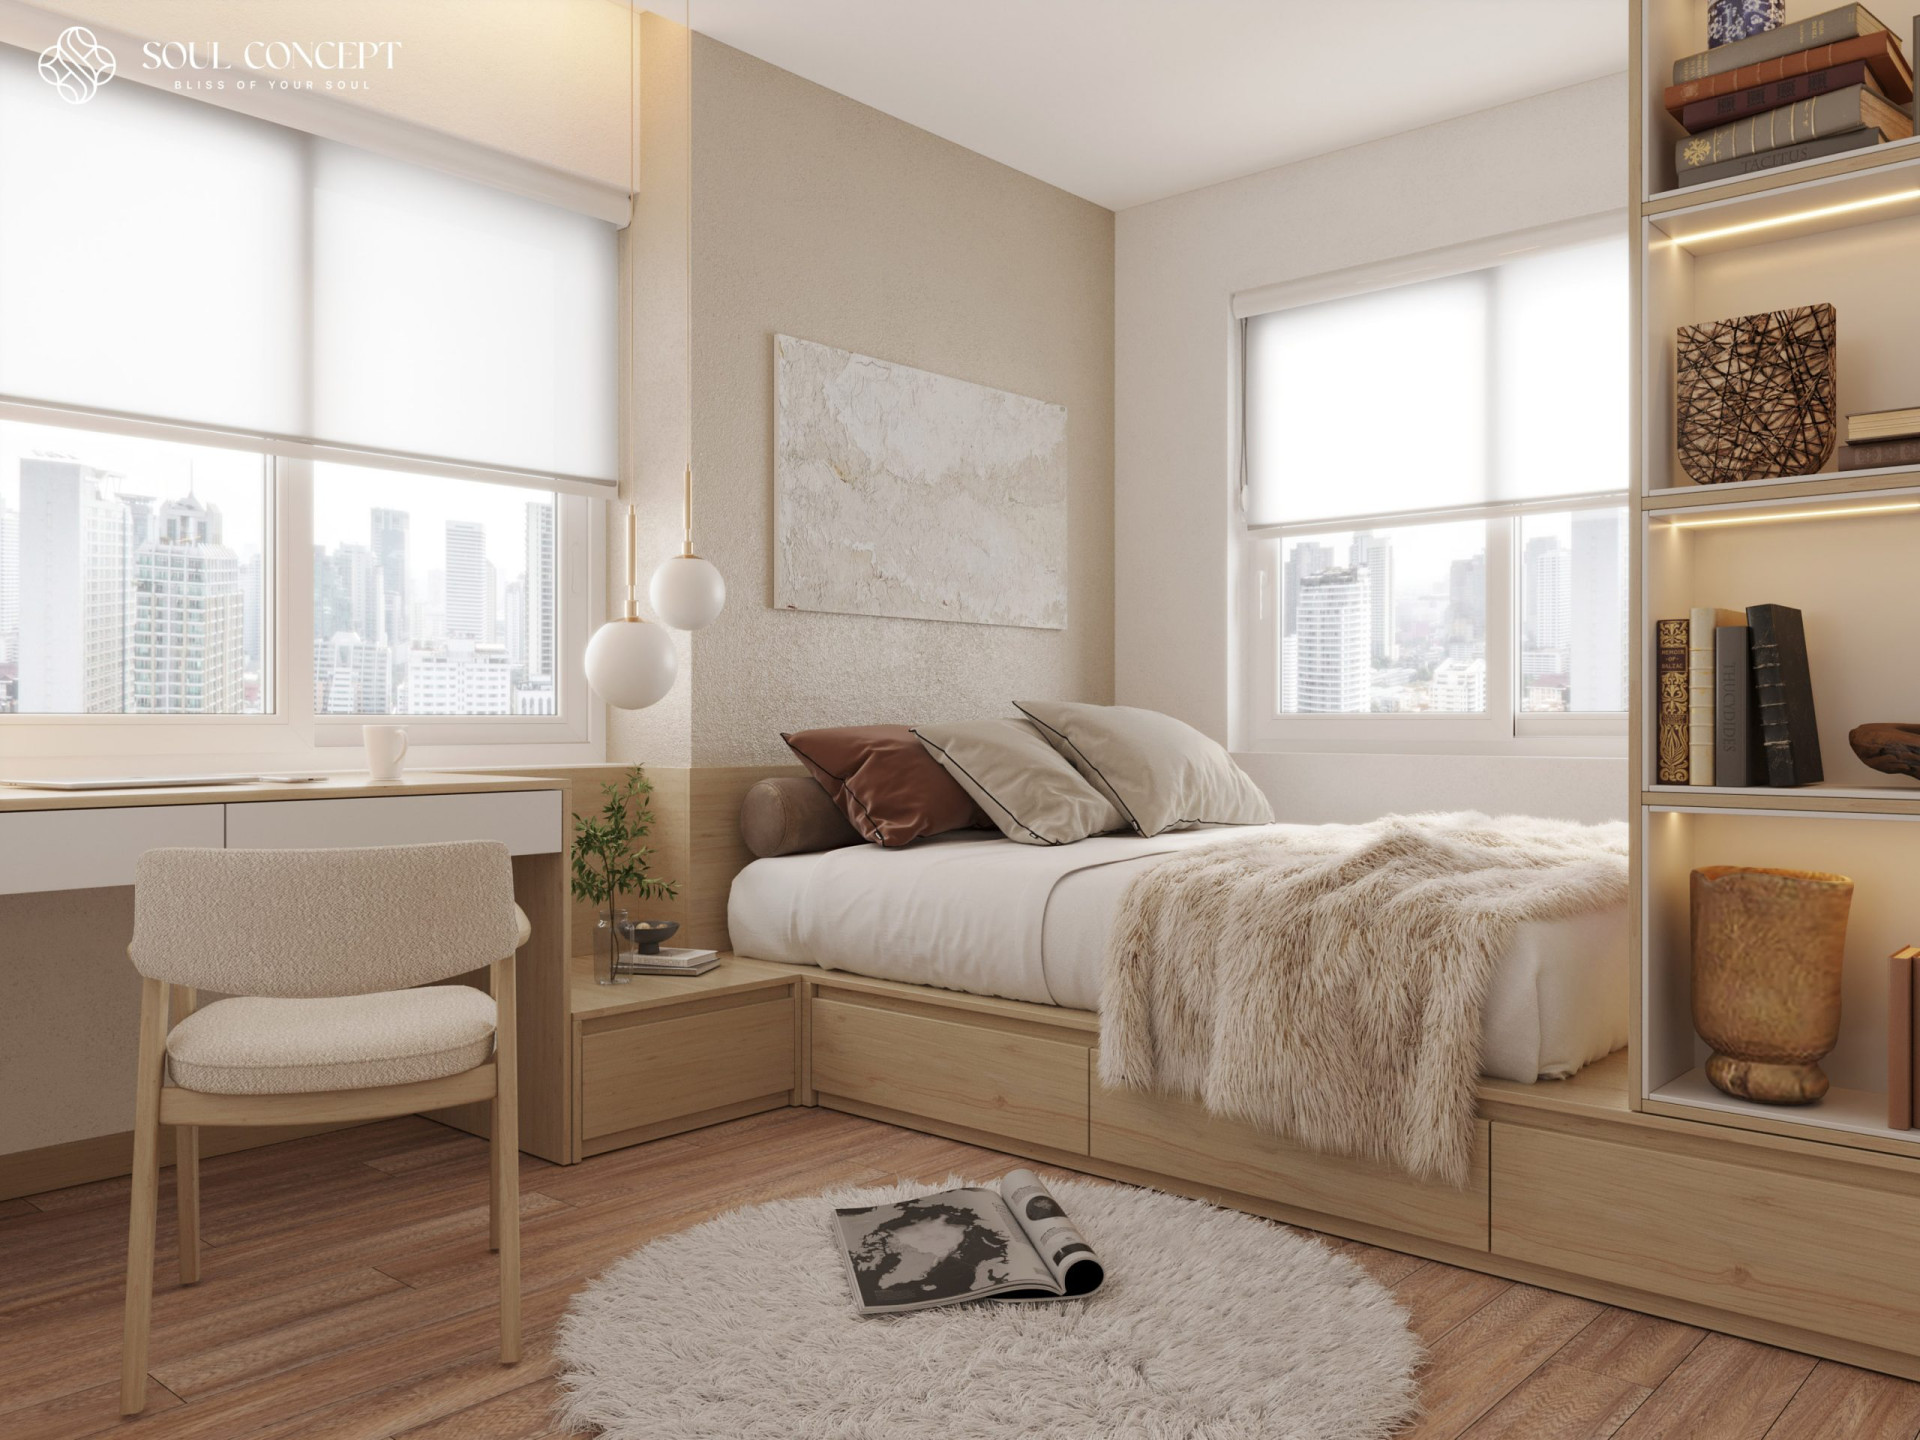 Giường ngủ đa năng kết hợp tủ đồ được sử dụng rộng rãi